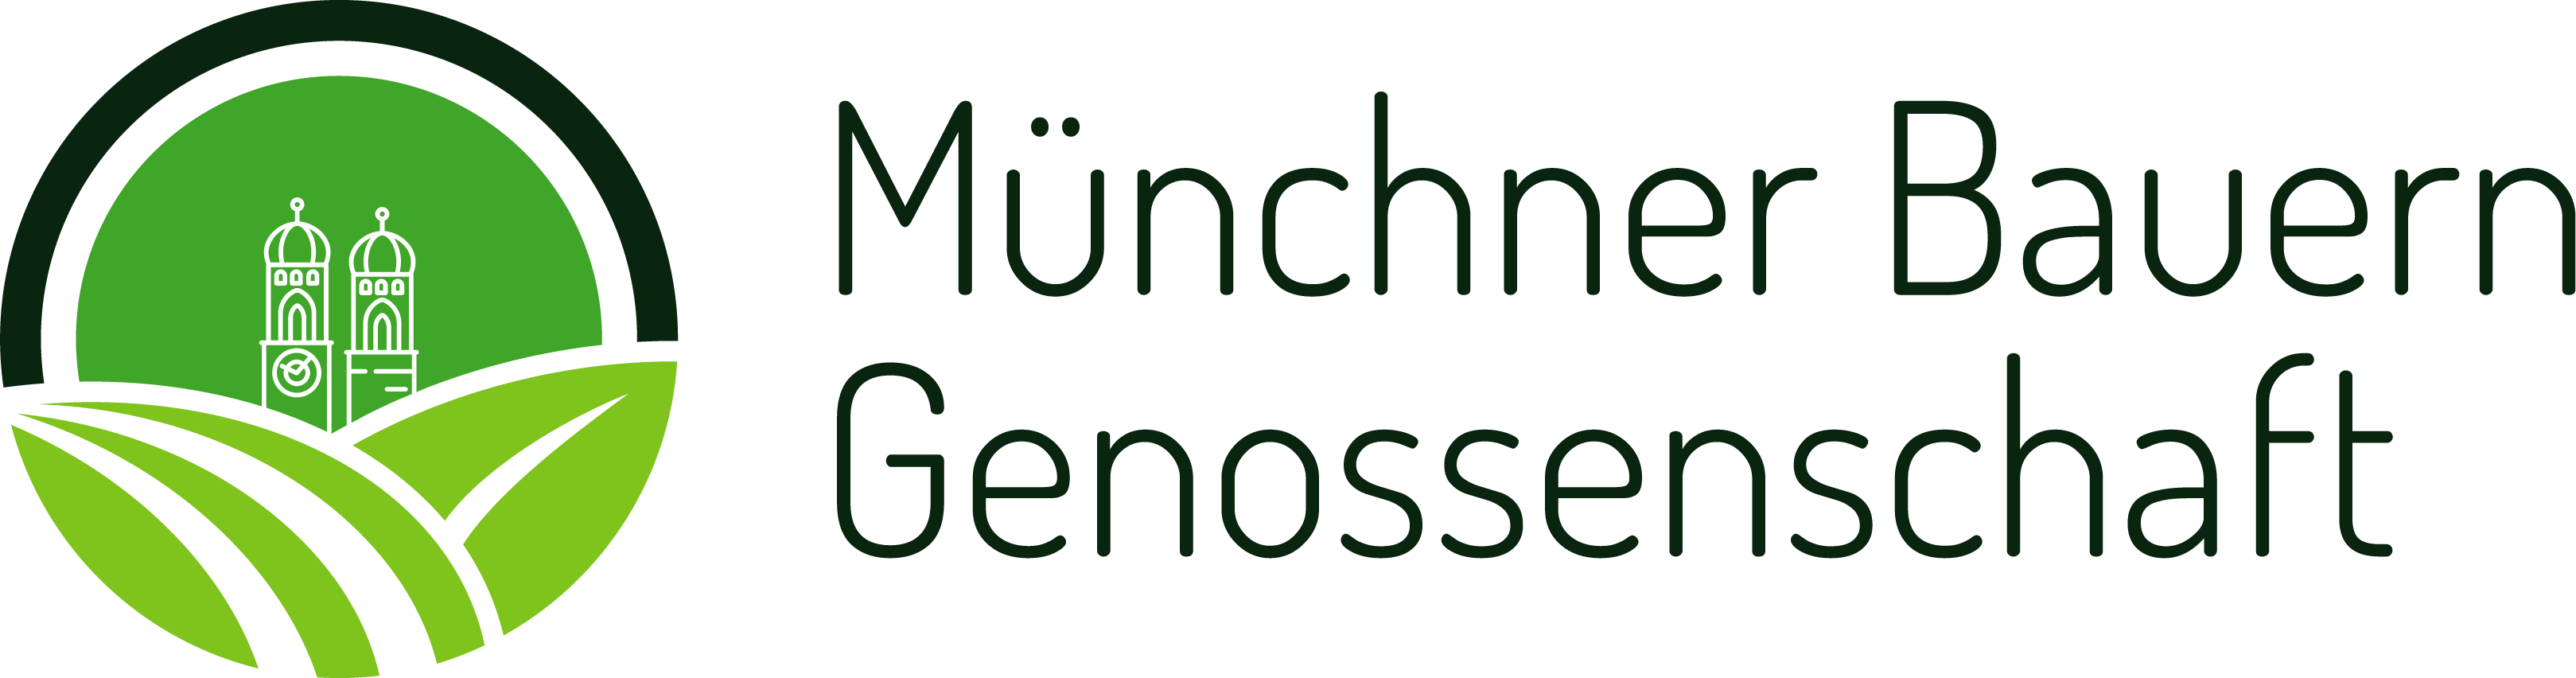 Münchner_Bauern_Genossenschaft_Logo